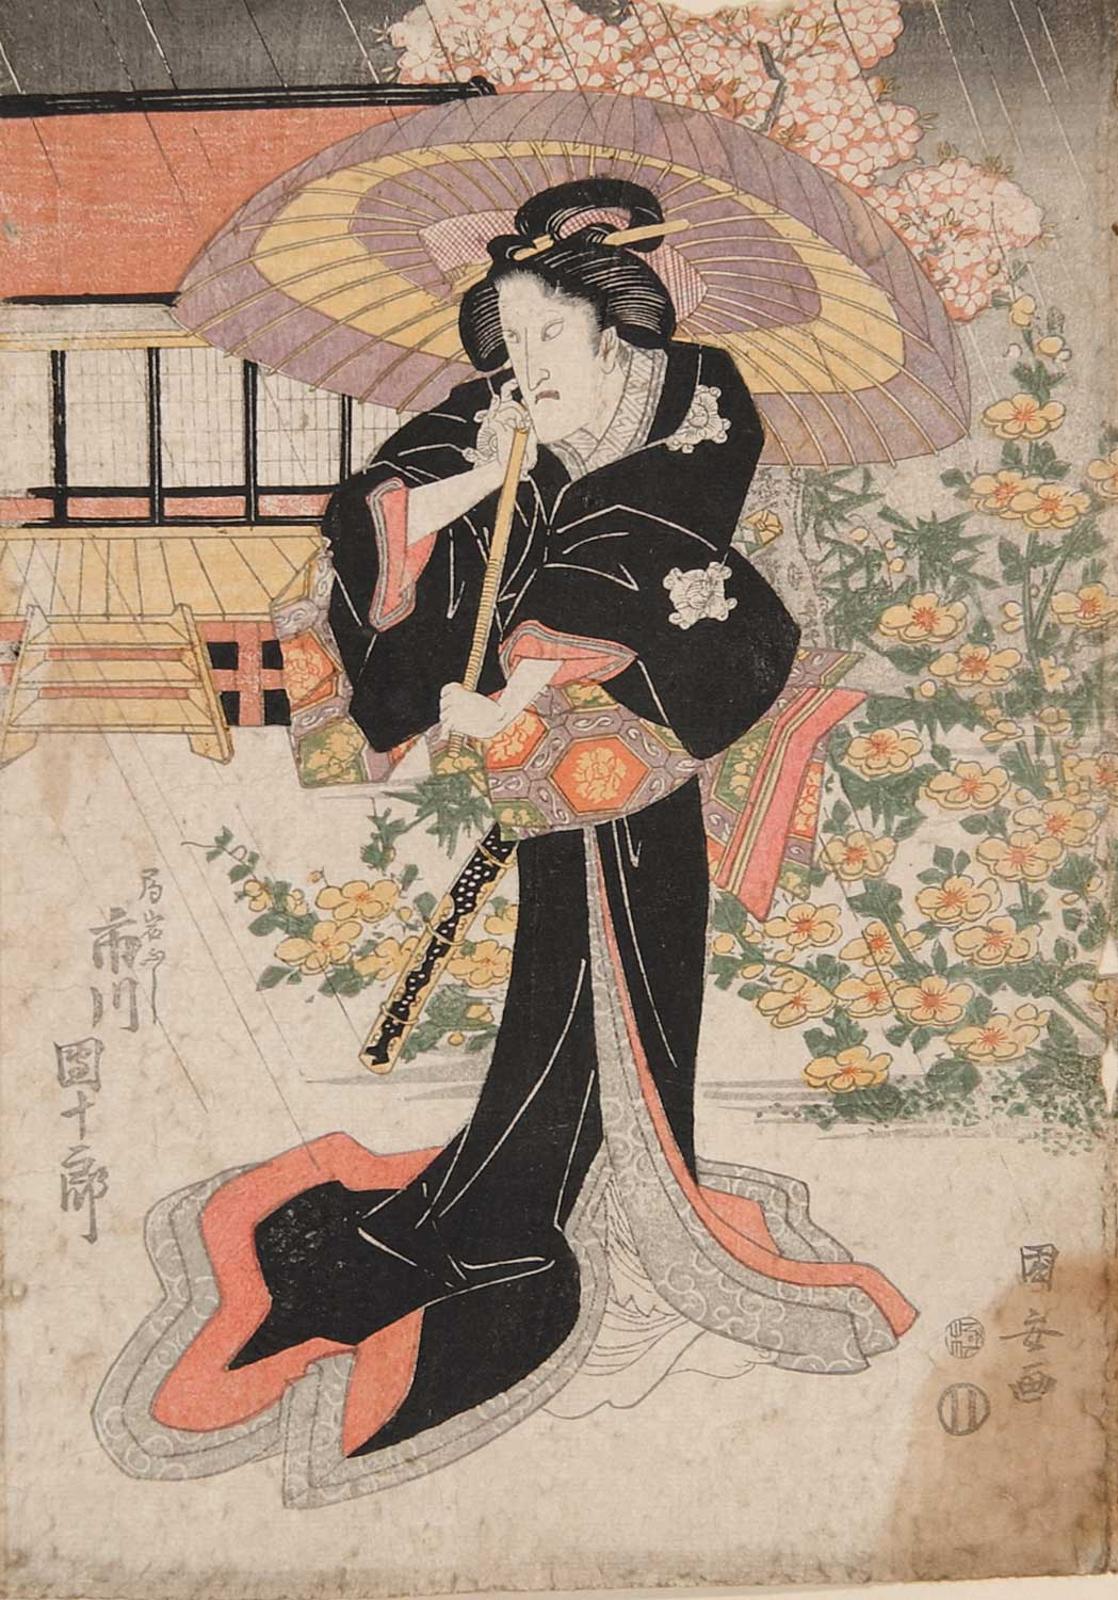 Utagawa Kuniyoshi (1979-1861) - Untitled - Waiting